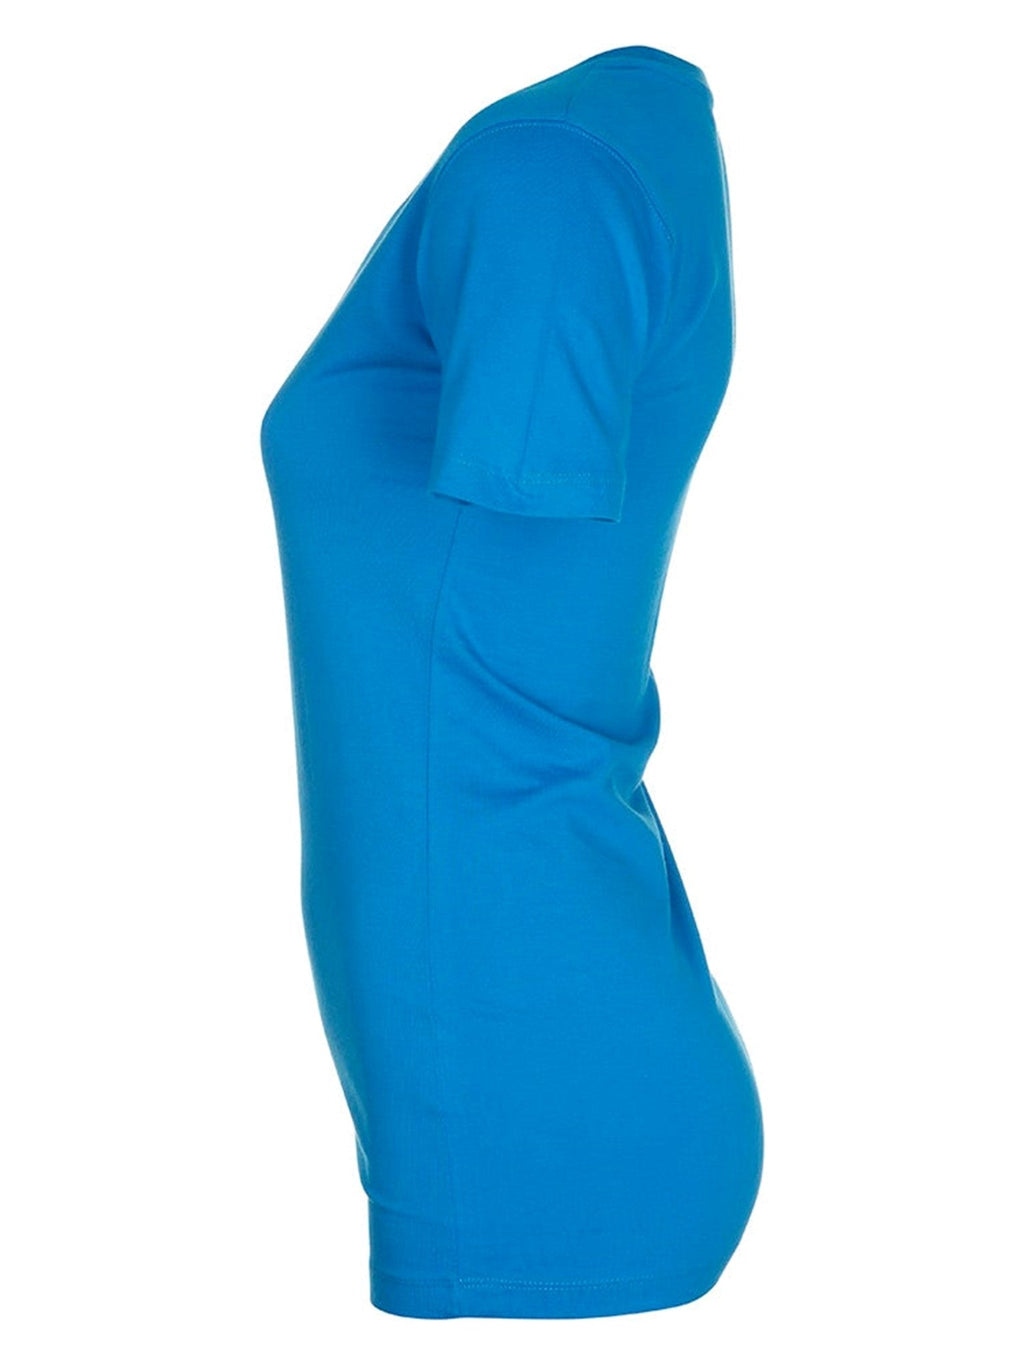 Τοποθετημένο μπλουζάκι-Torquoise Blue